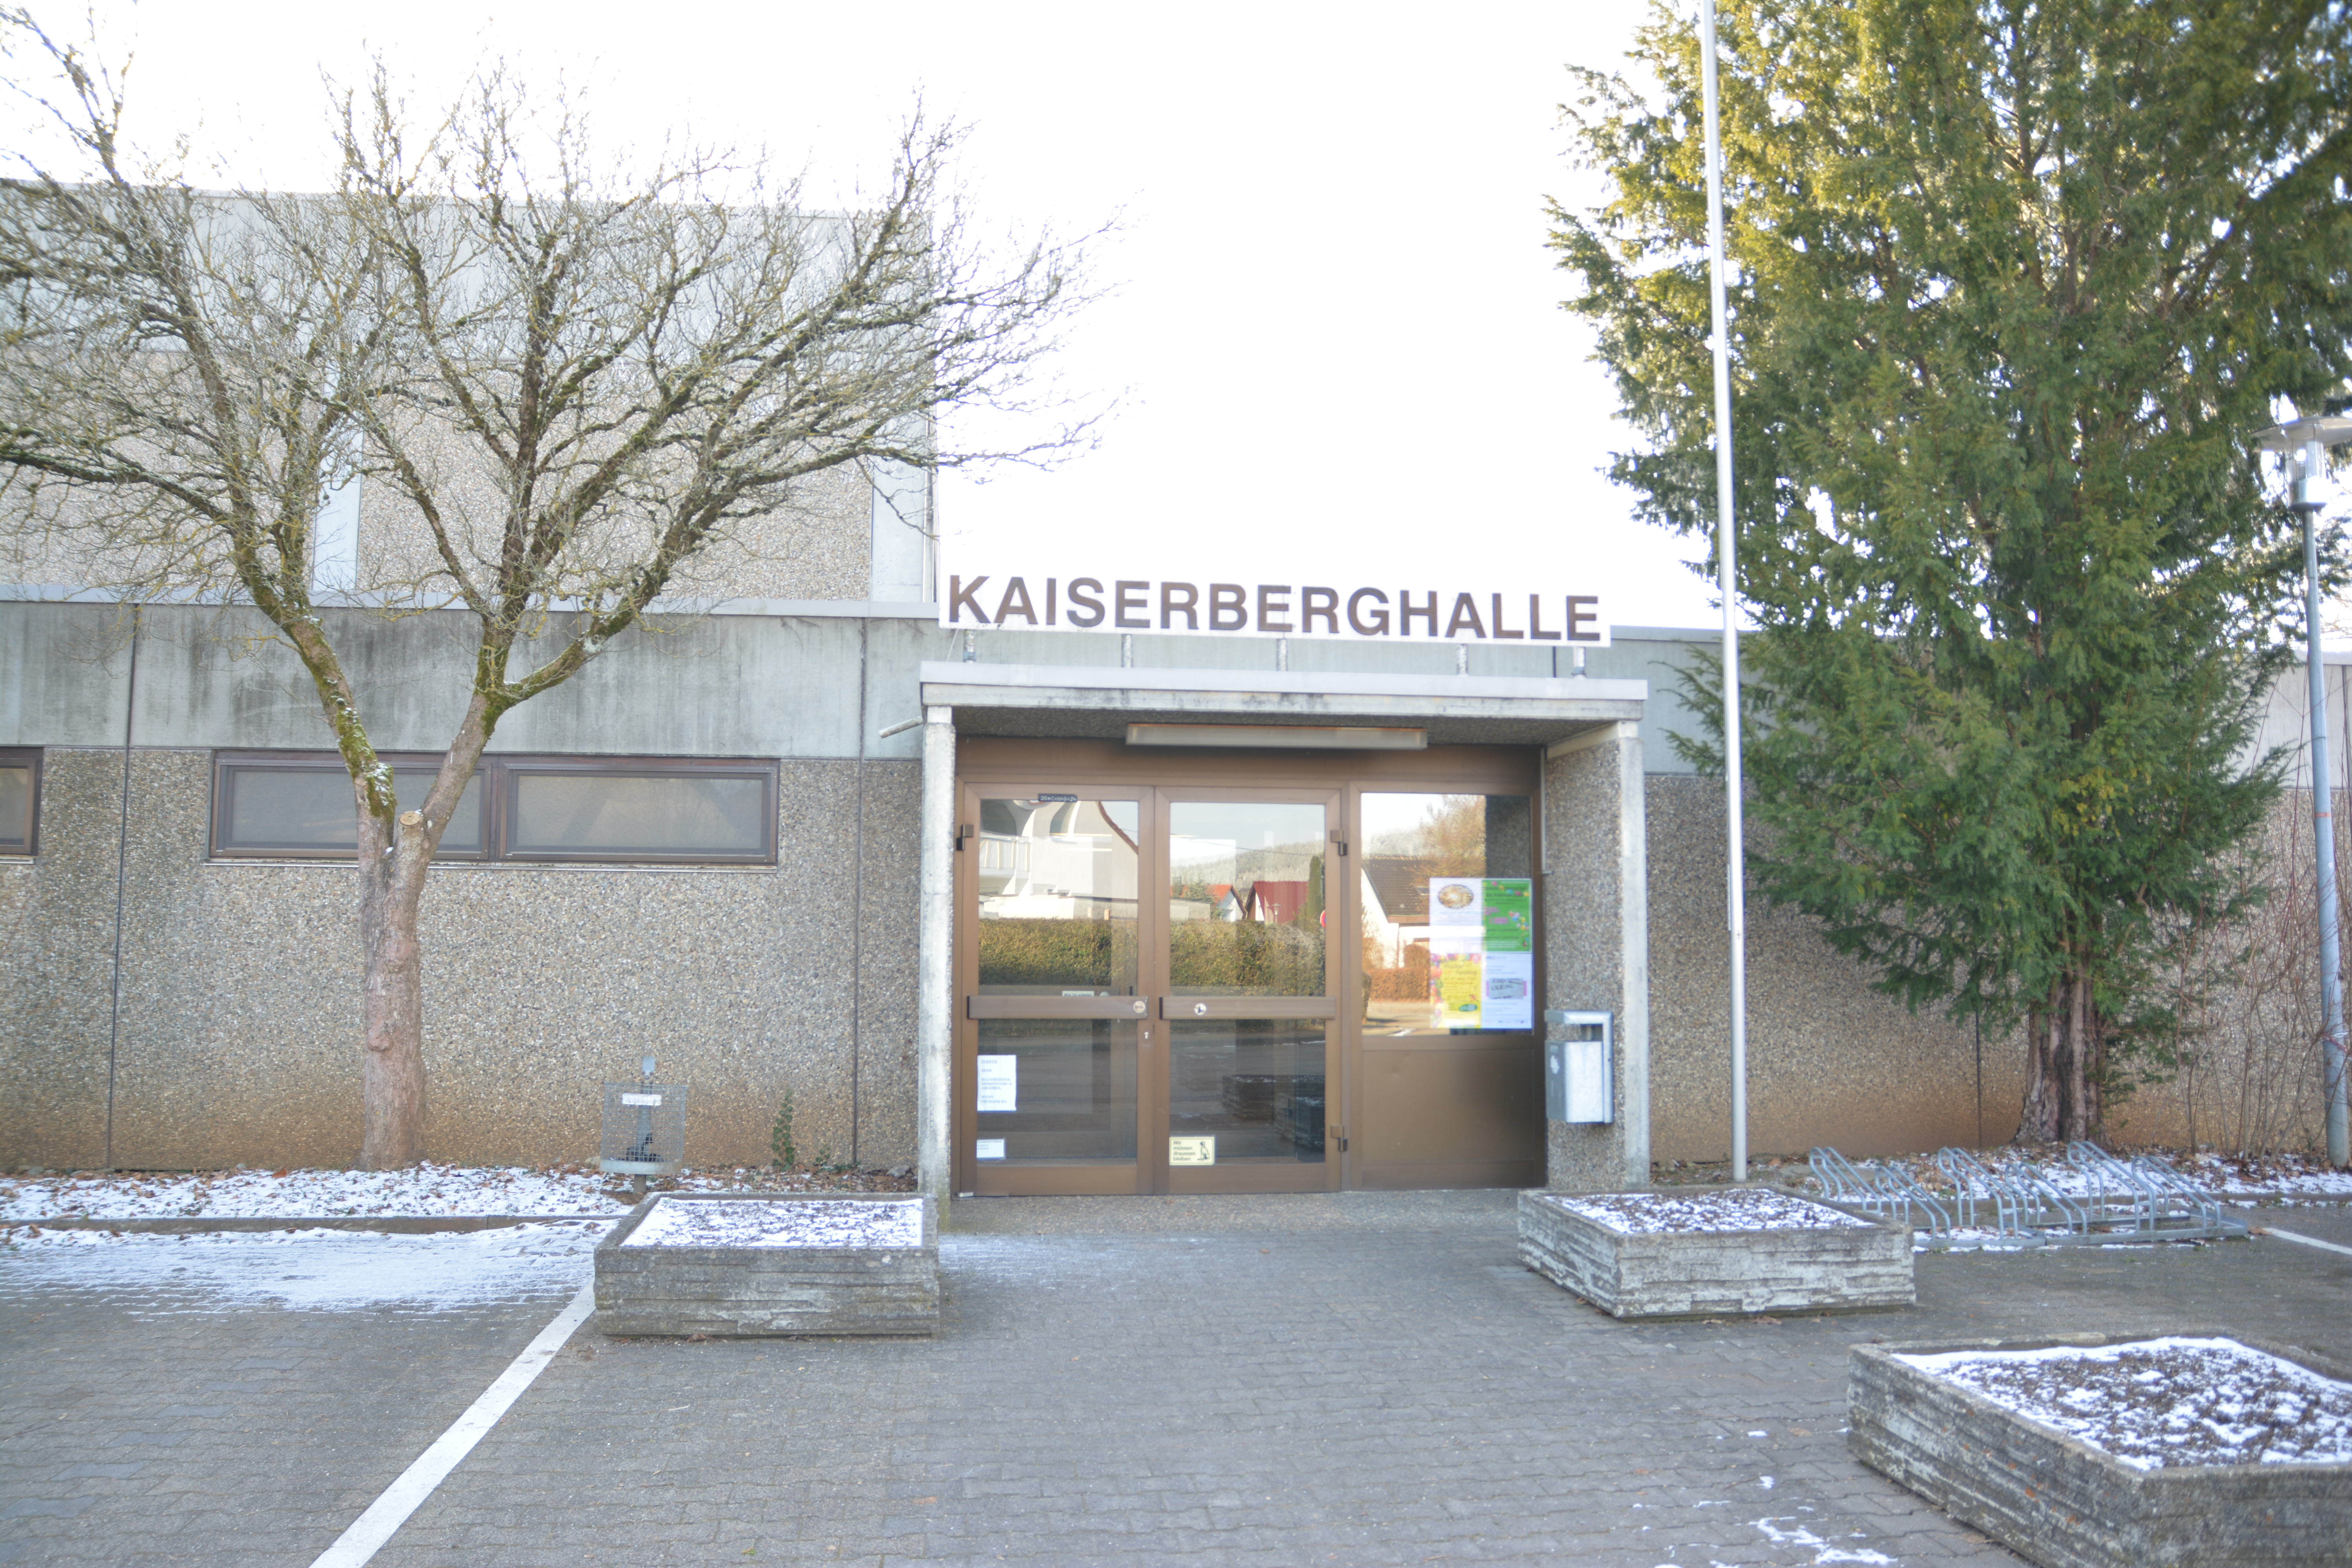  Kaiserberghalle Wißgoldingen 